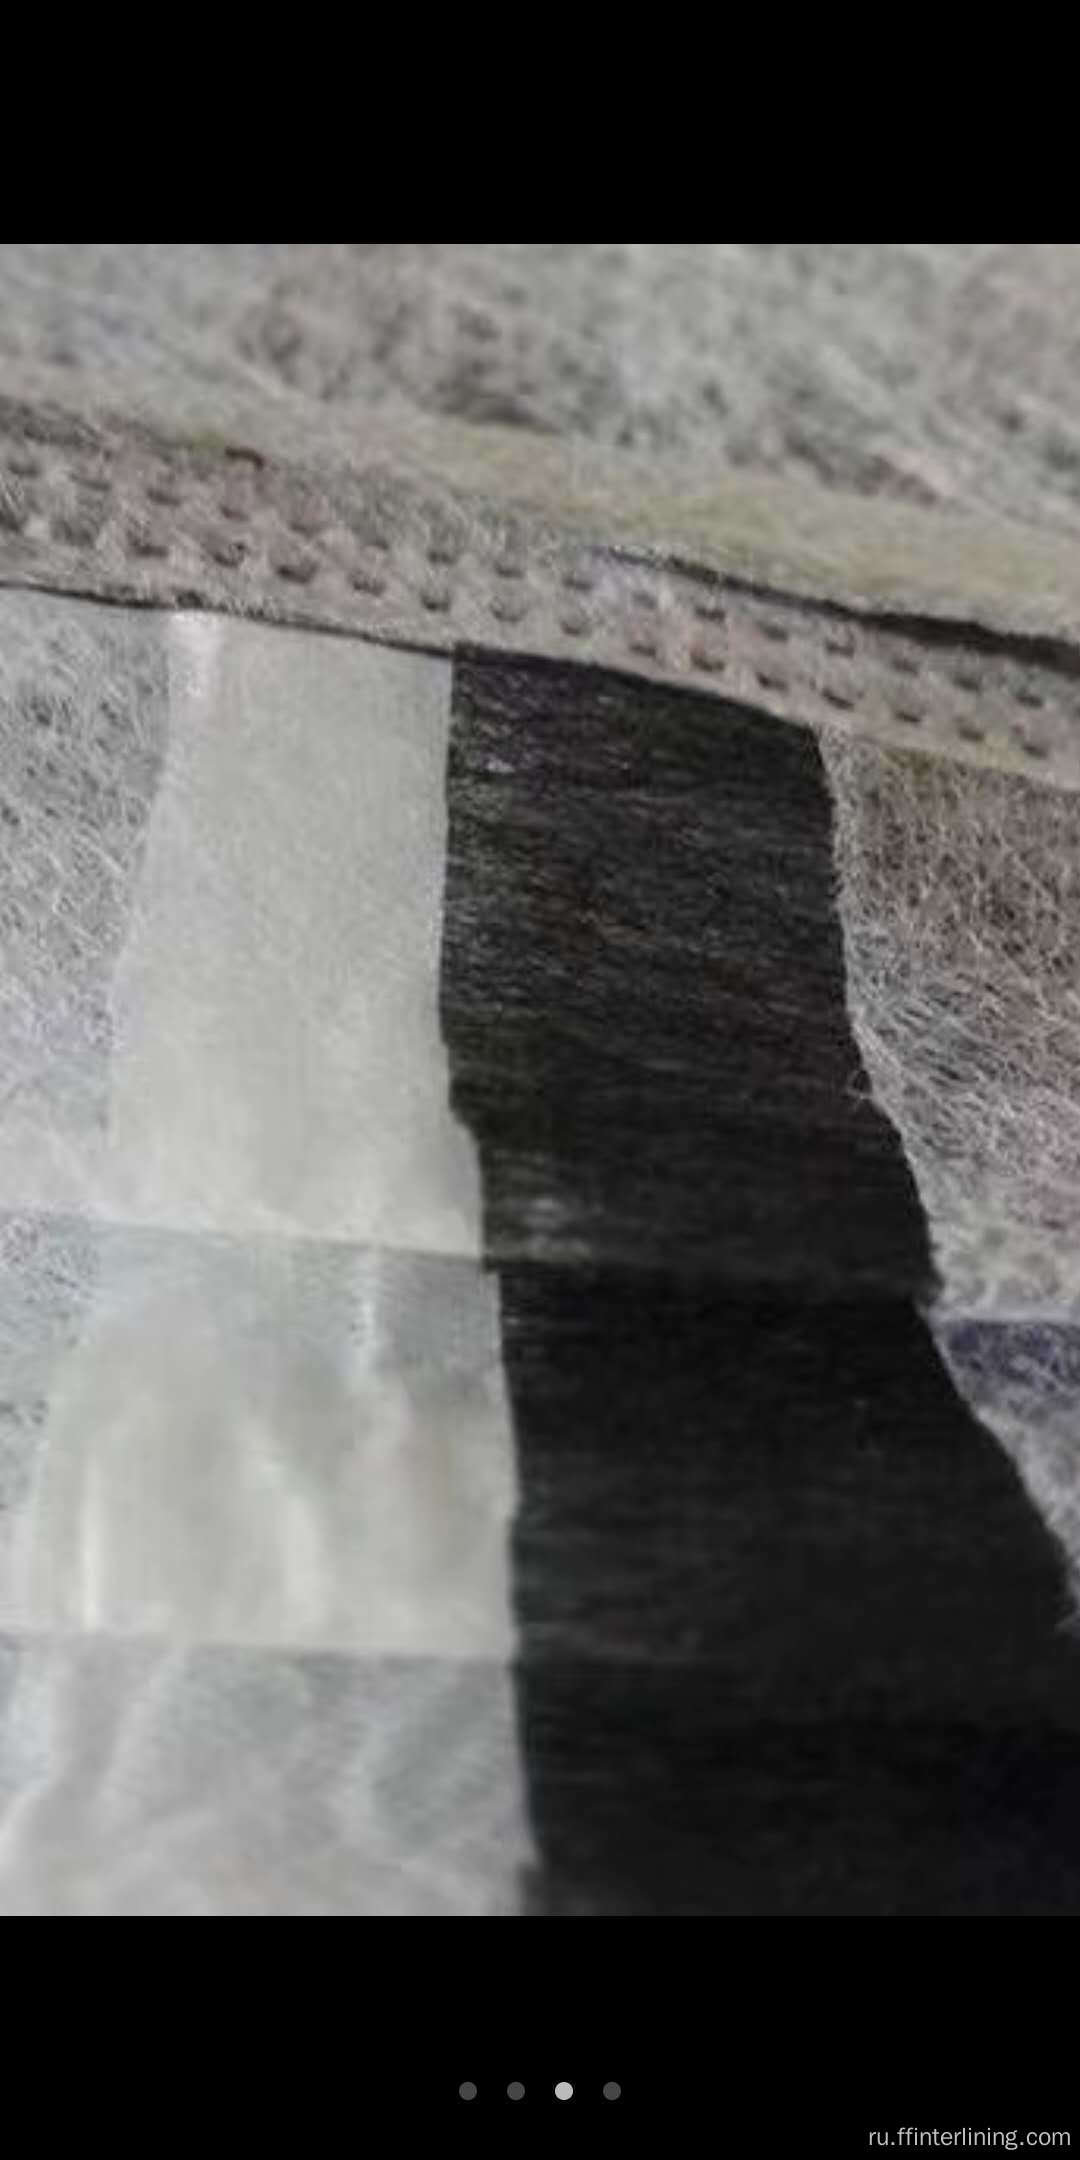 Нетканый фильтр с активированным углем/черный цвет для маски